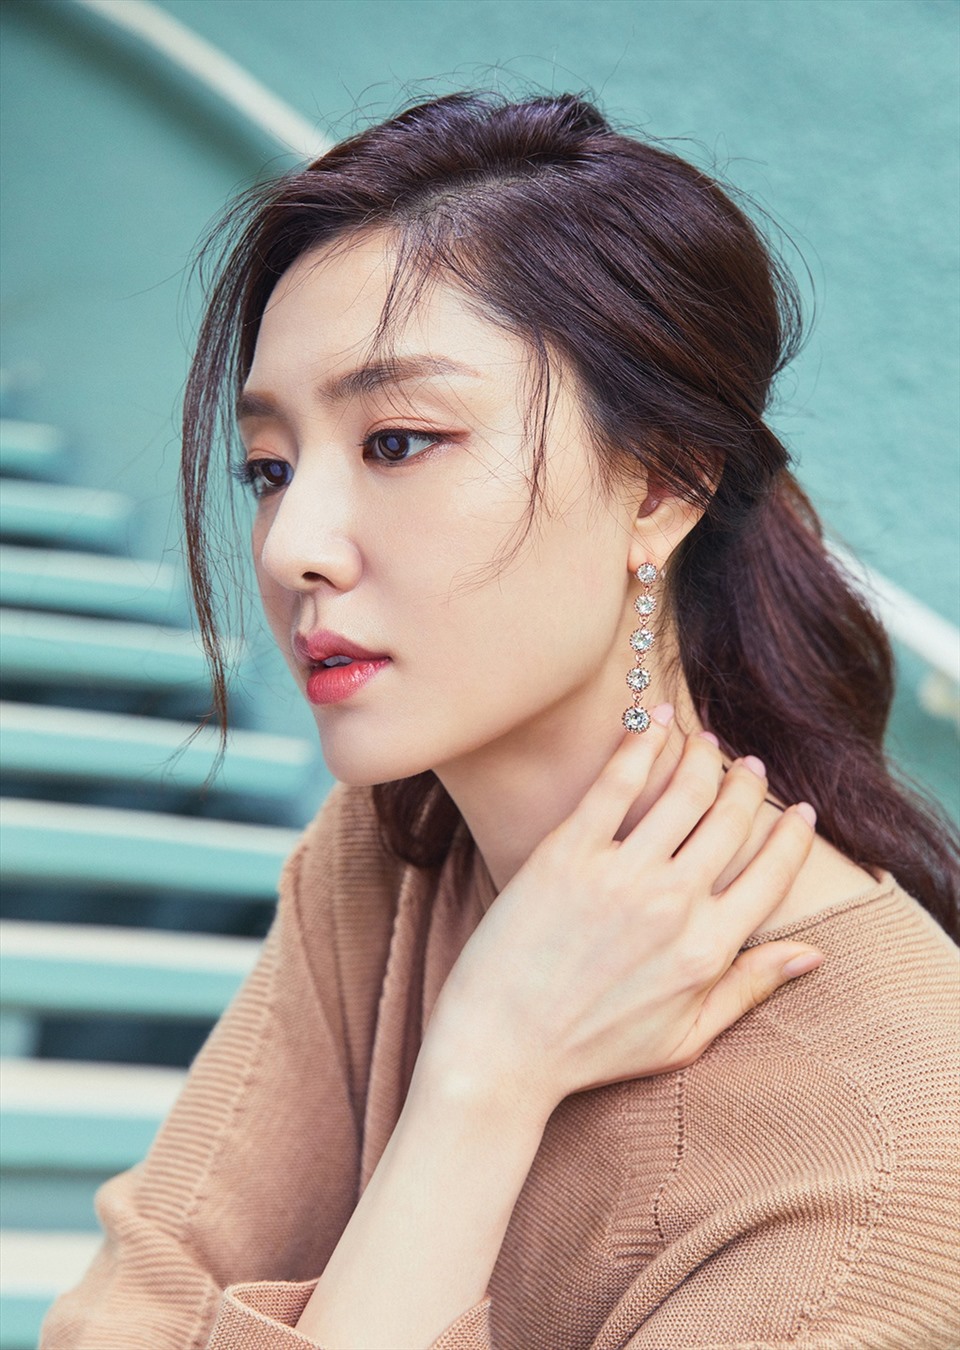 Nhiều khán giả yêu mến Seo Ji Hye nhận xét nữ diễn viên có cuộc sống bình lặng. Ngoài công việc, cô hầu như không chia sẻ với báo chí về chuyện tình cảm cá nhân. Ảnh: Instagram.